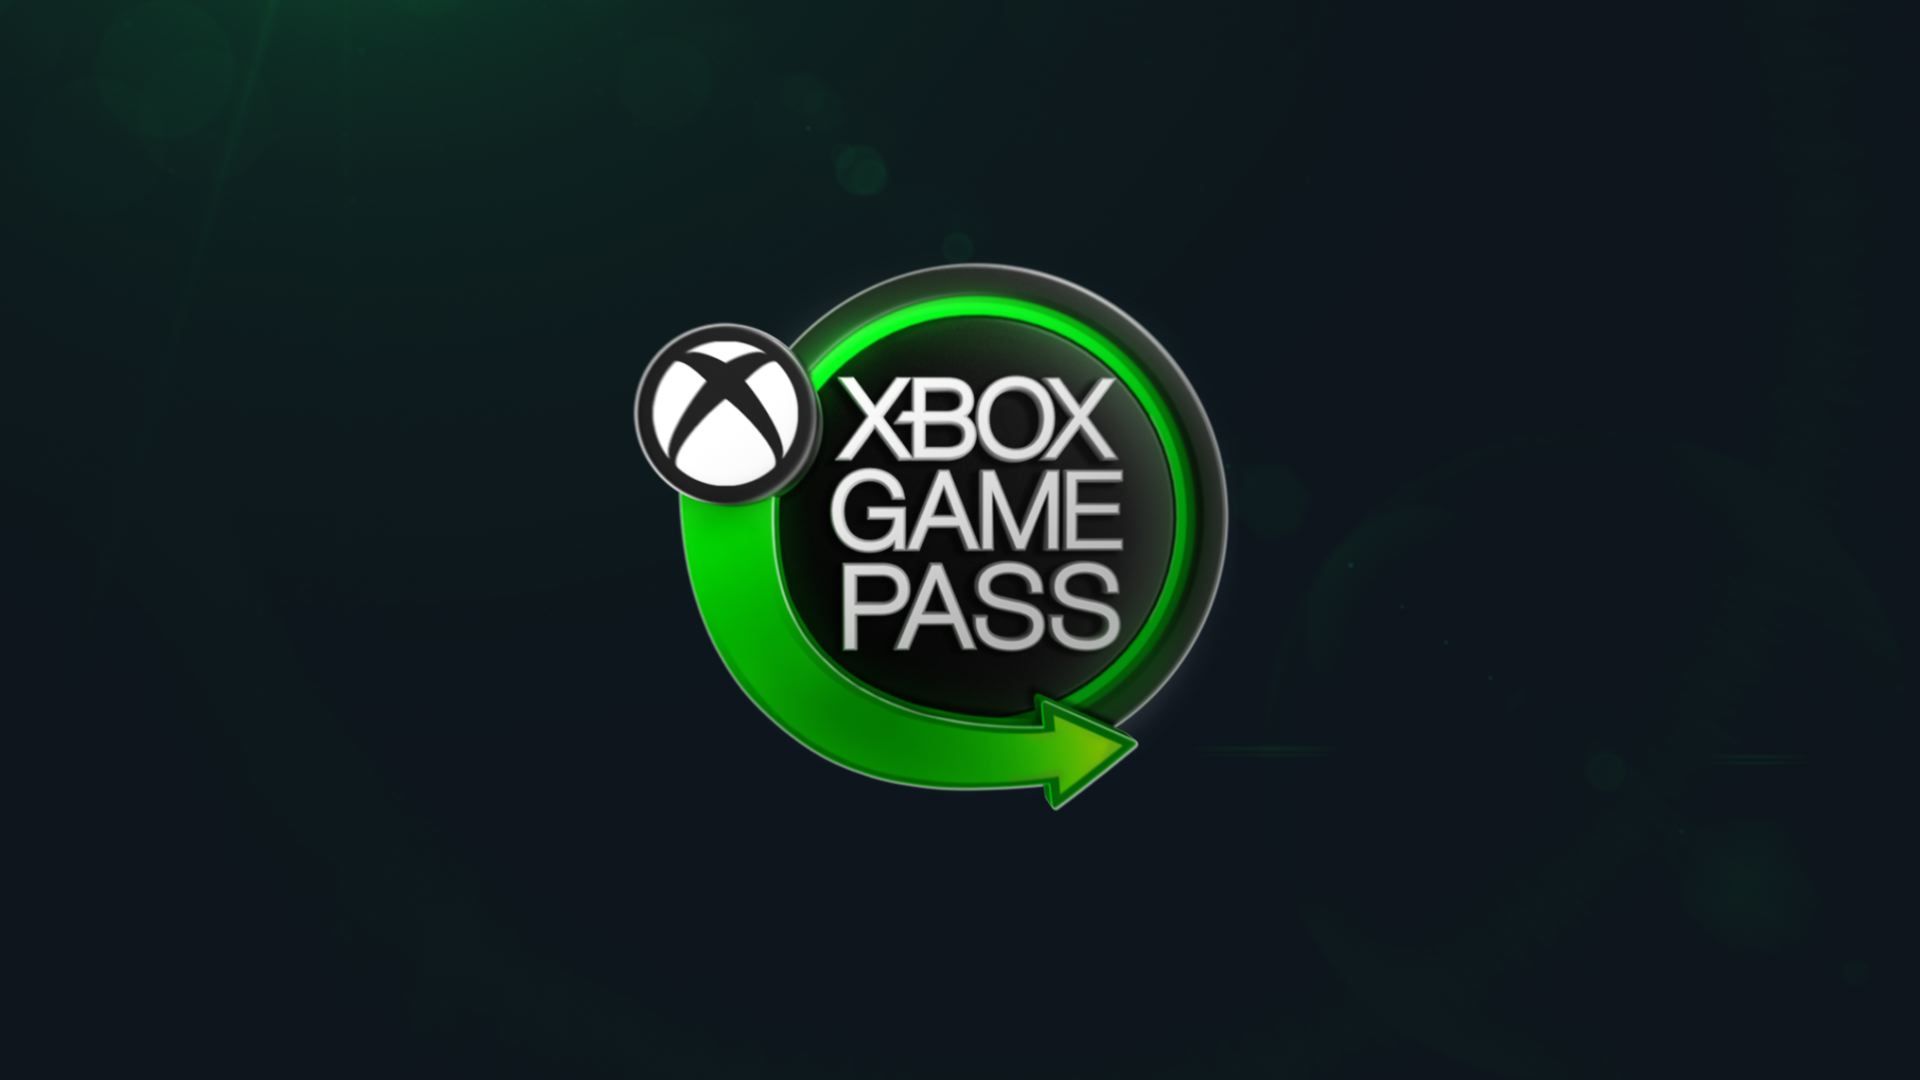 Seriuos Sam w ramach subskrypcji Xbox Game Pass 